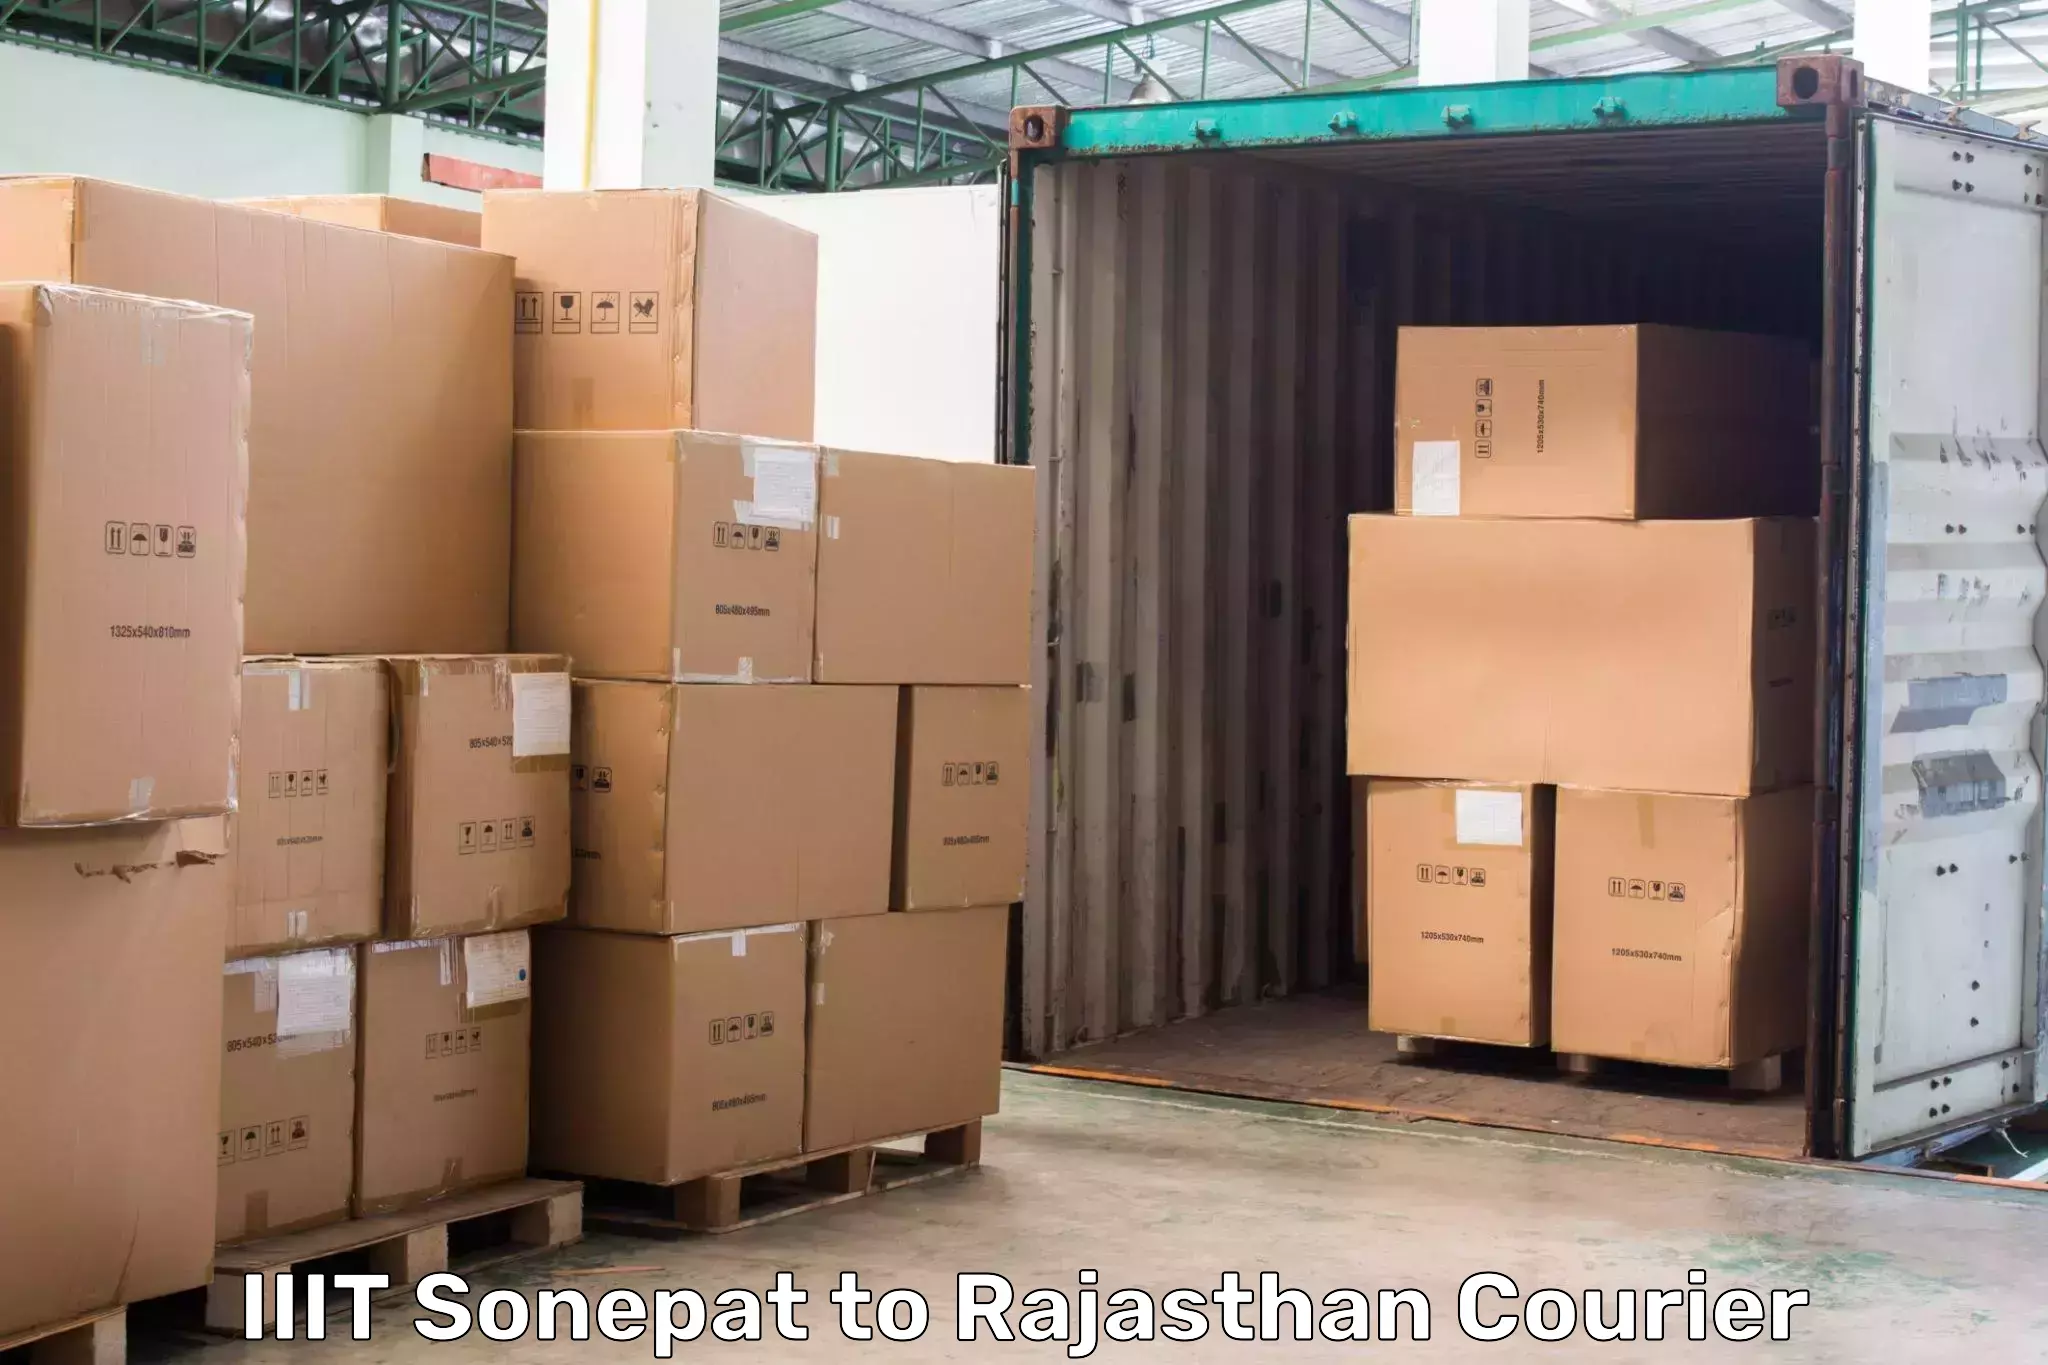 Business courier solutions IIIT Sonepat to Pokhran